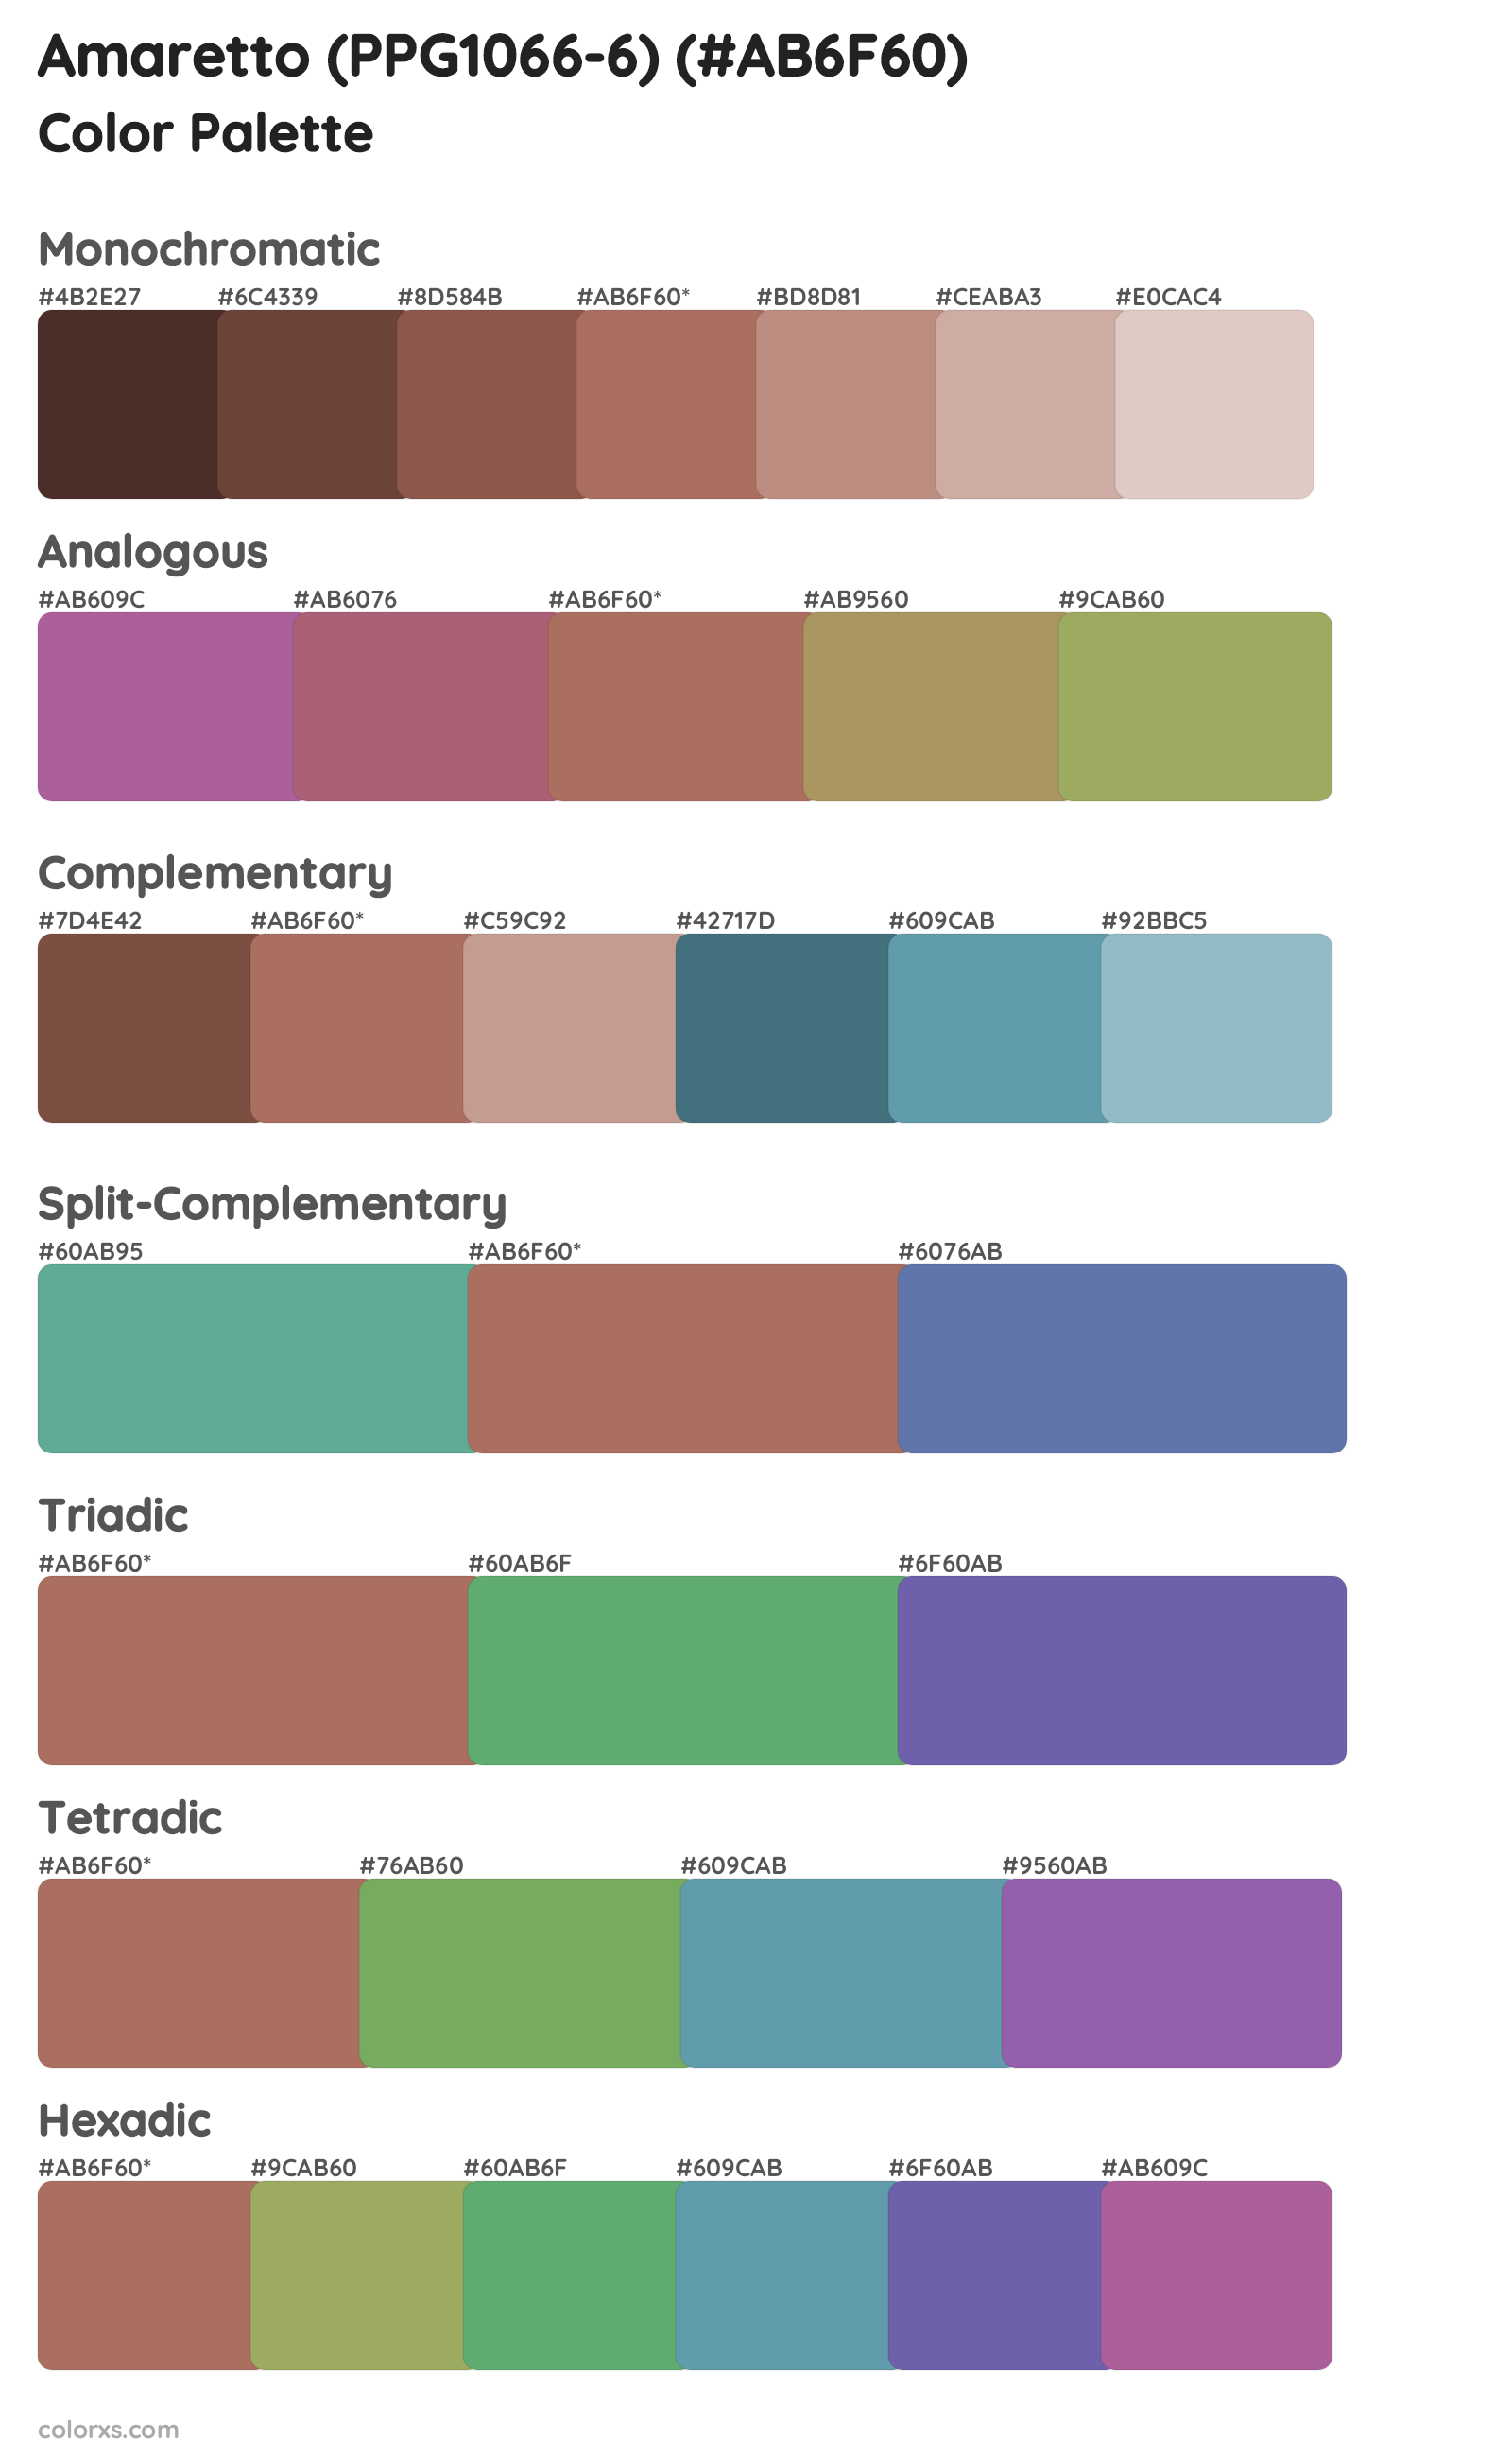 Amaretto (PPG1066-6) Color Scheme Palettes